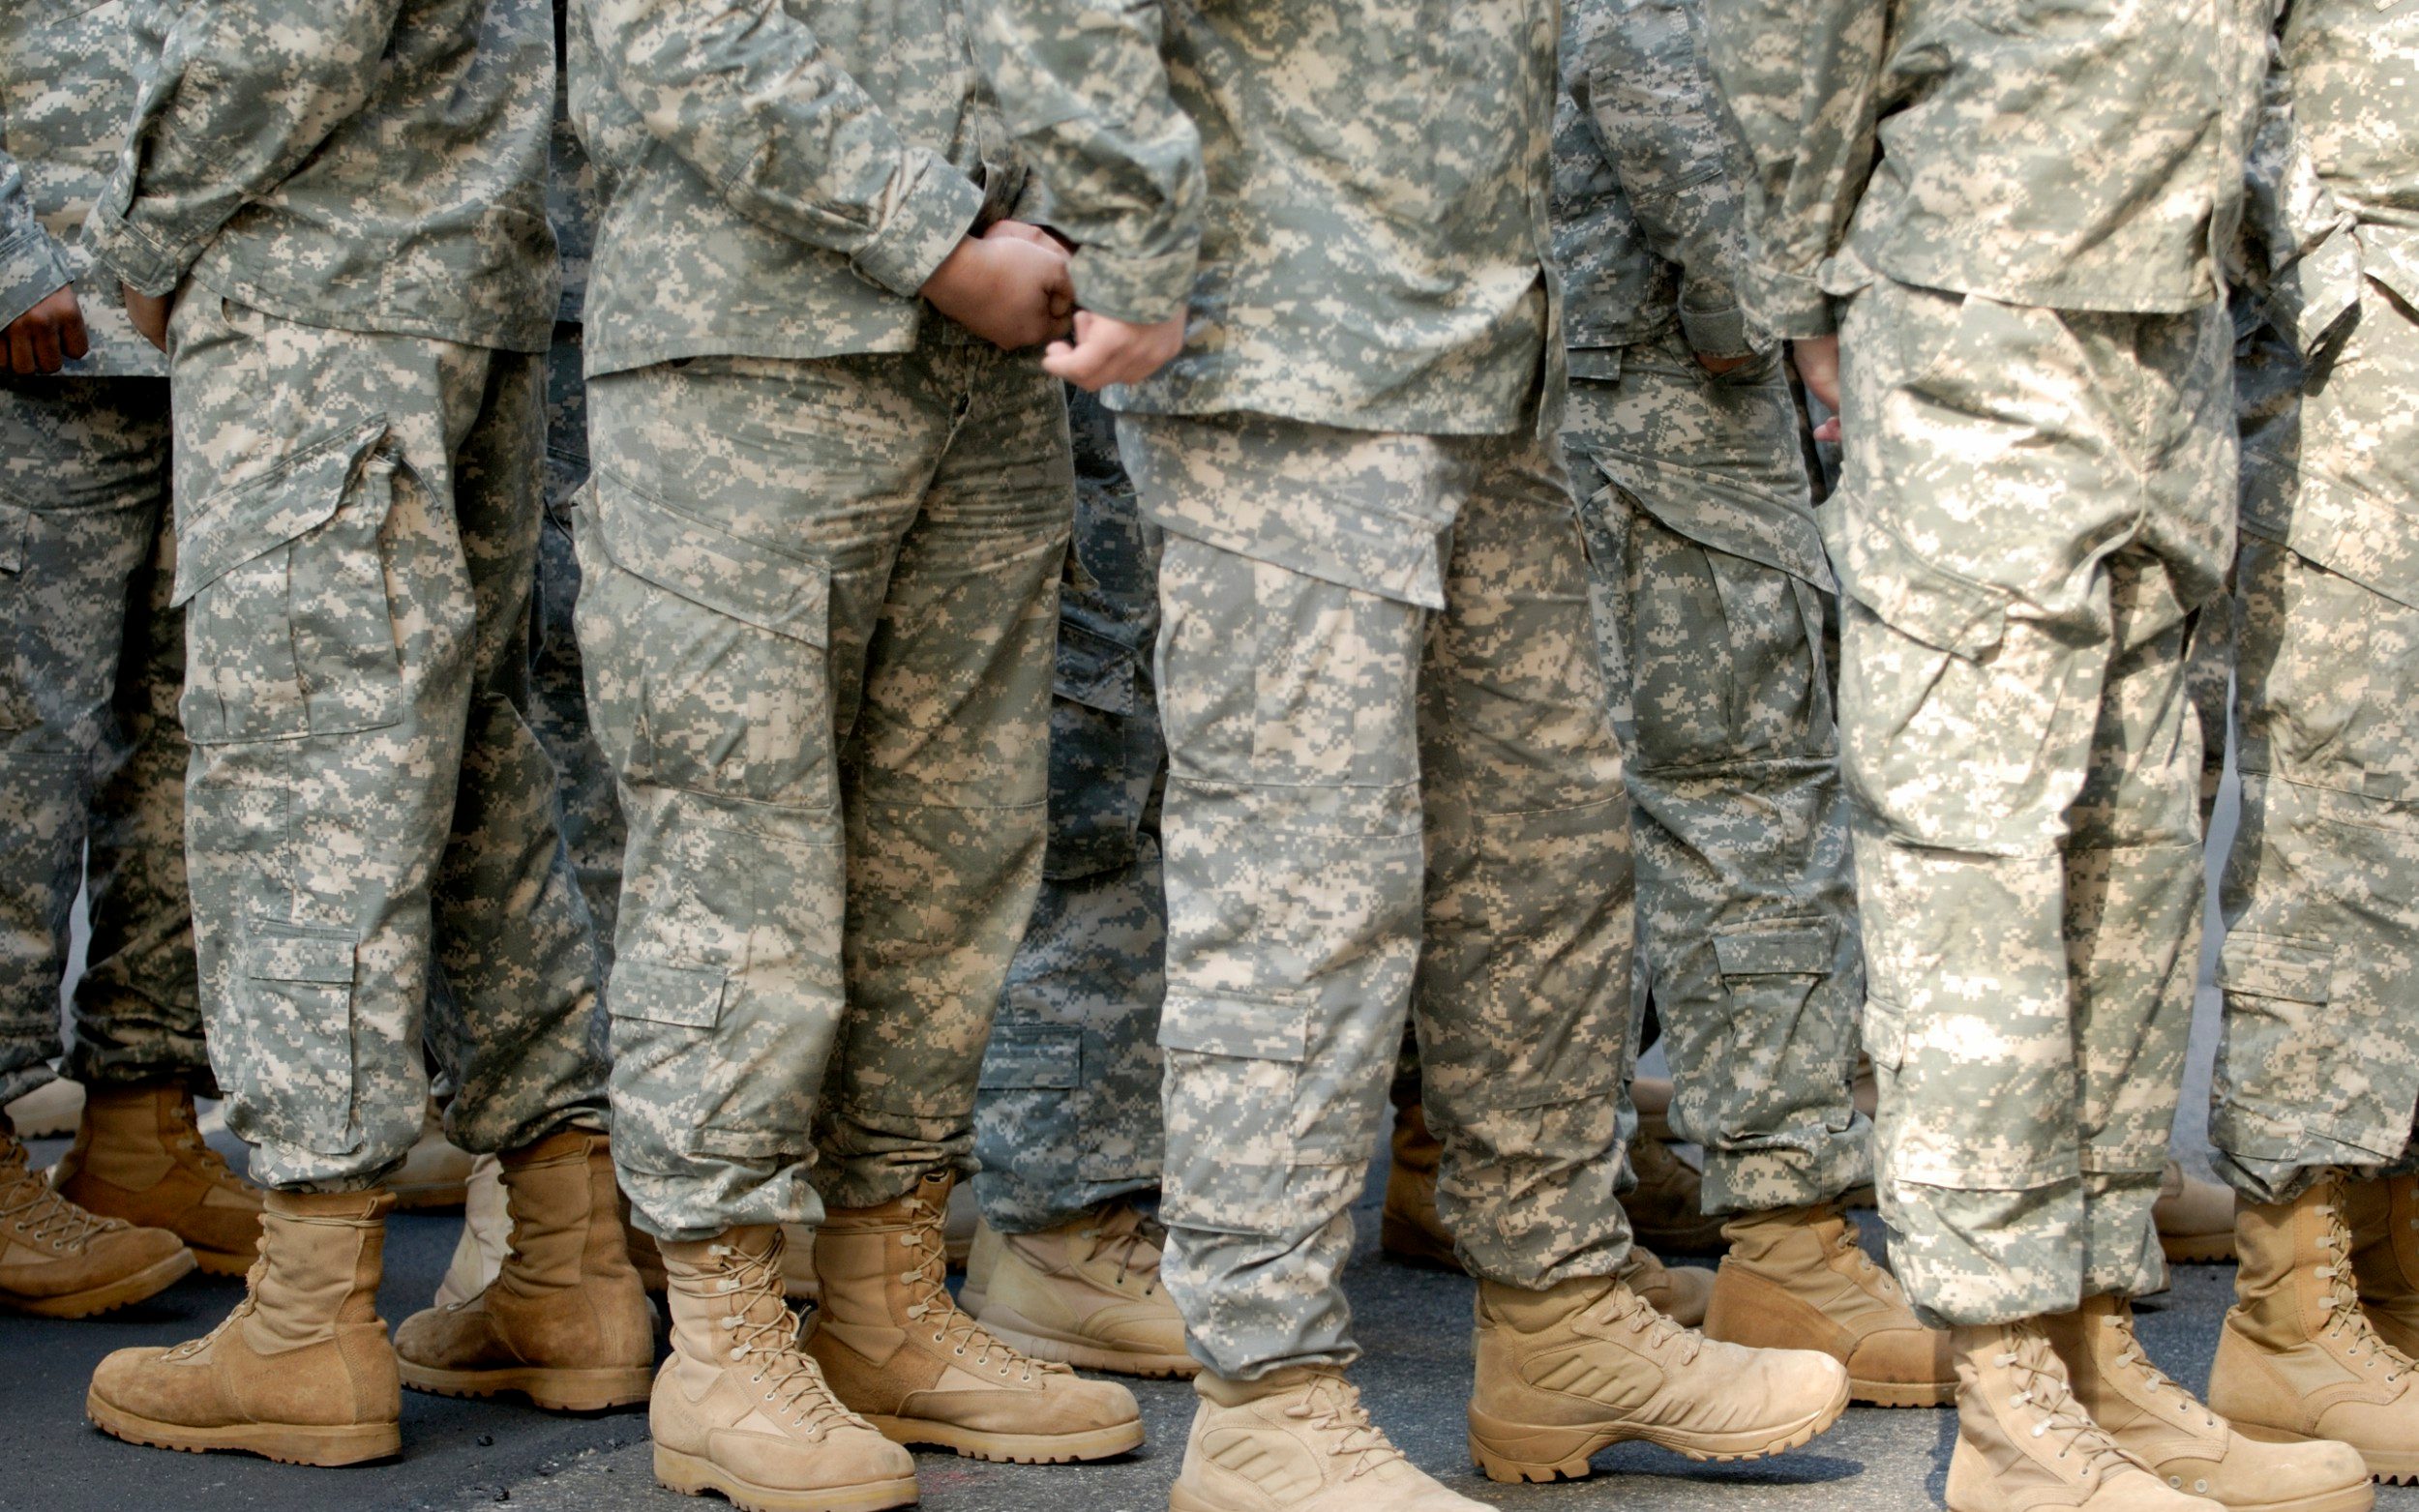 us slashes 24,000 army jobs as recruitment crisis bites